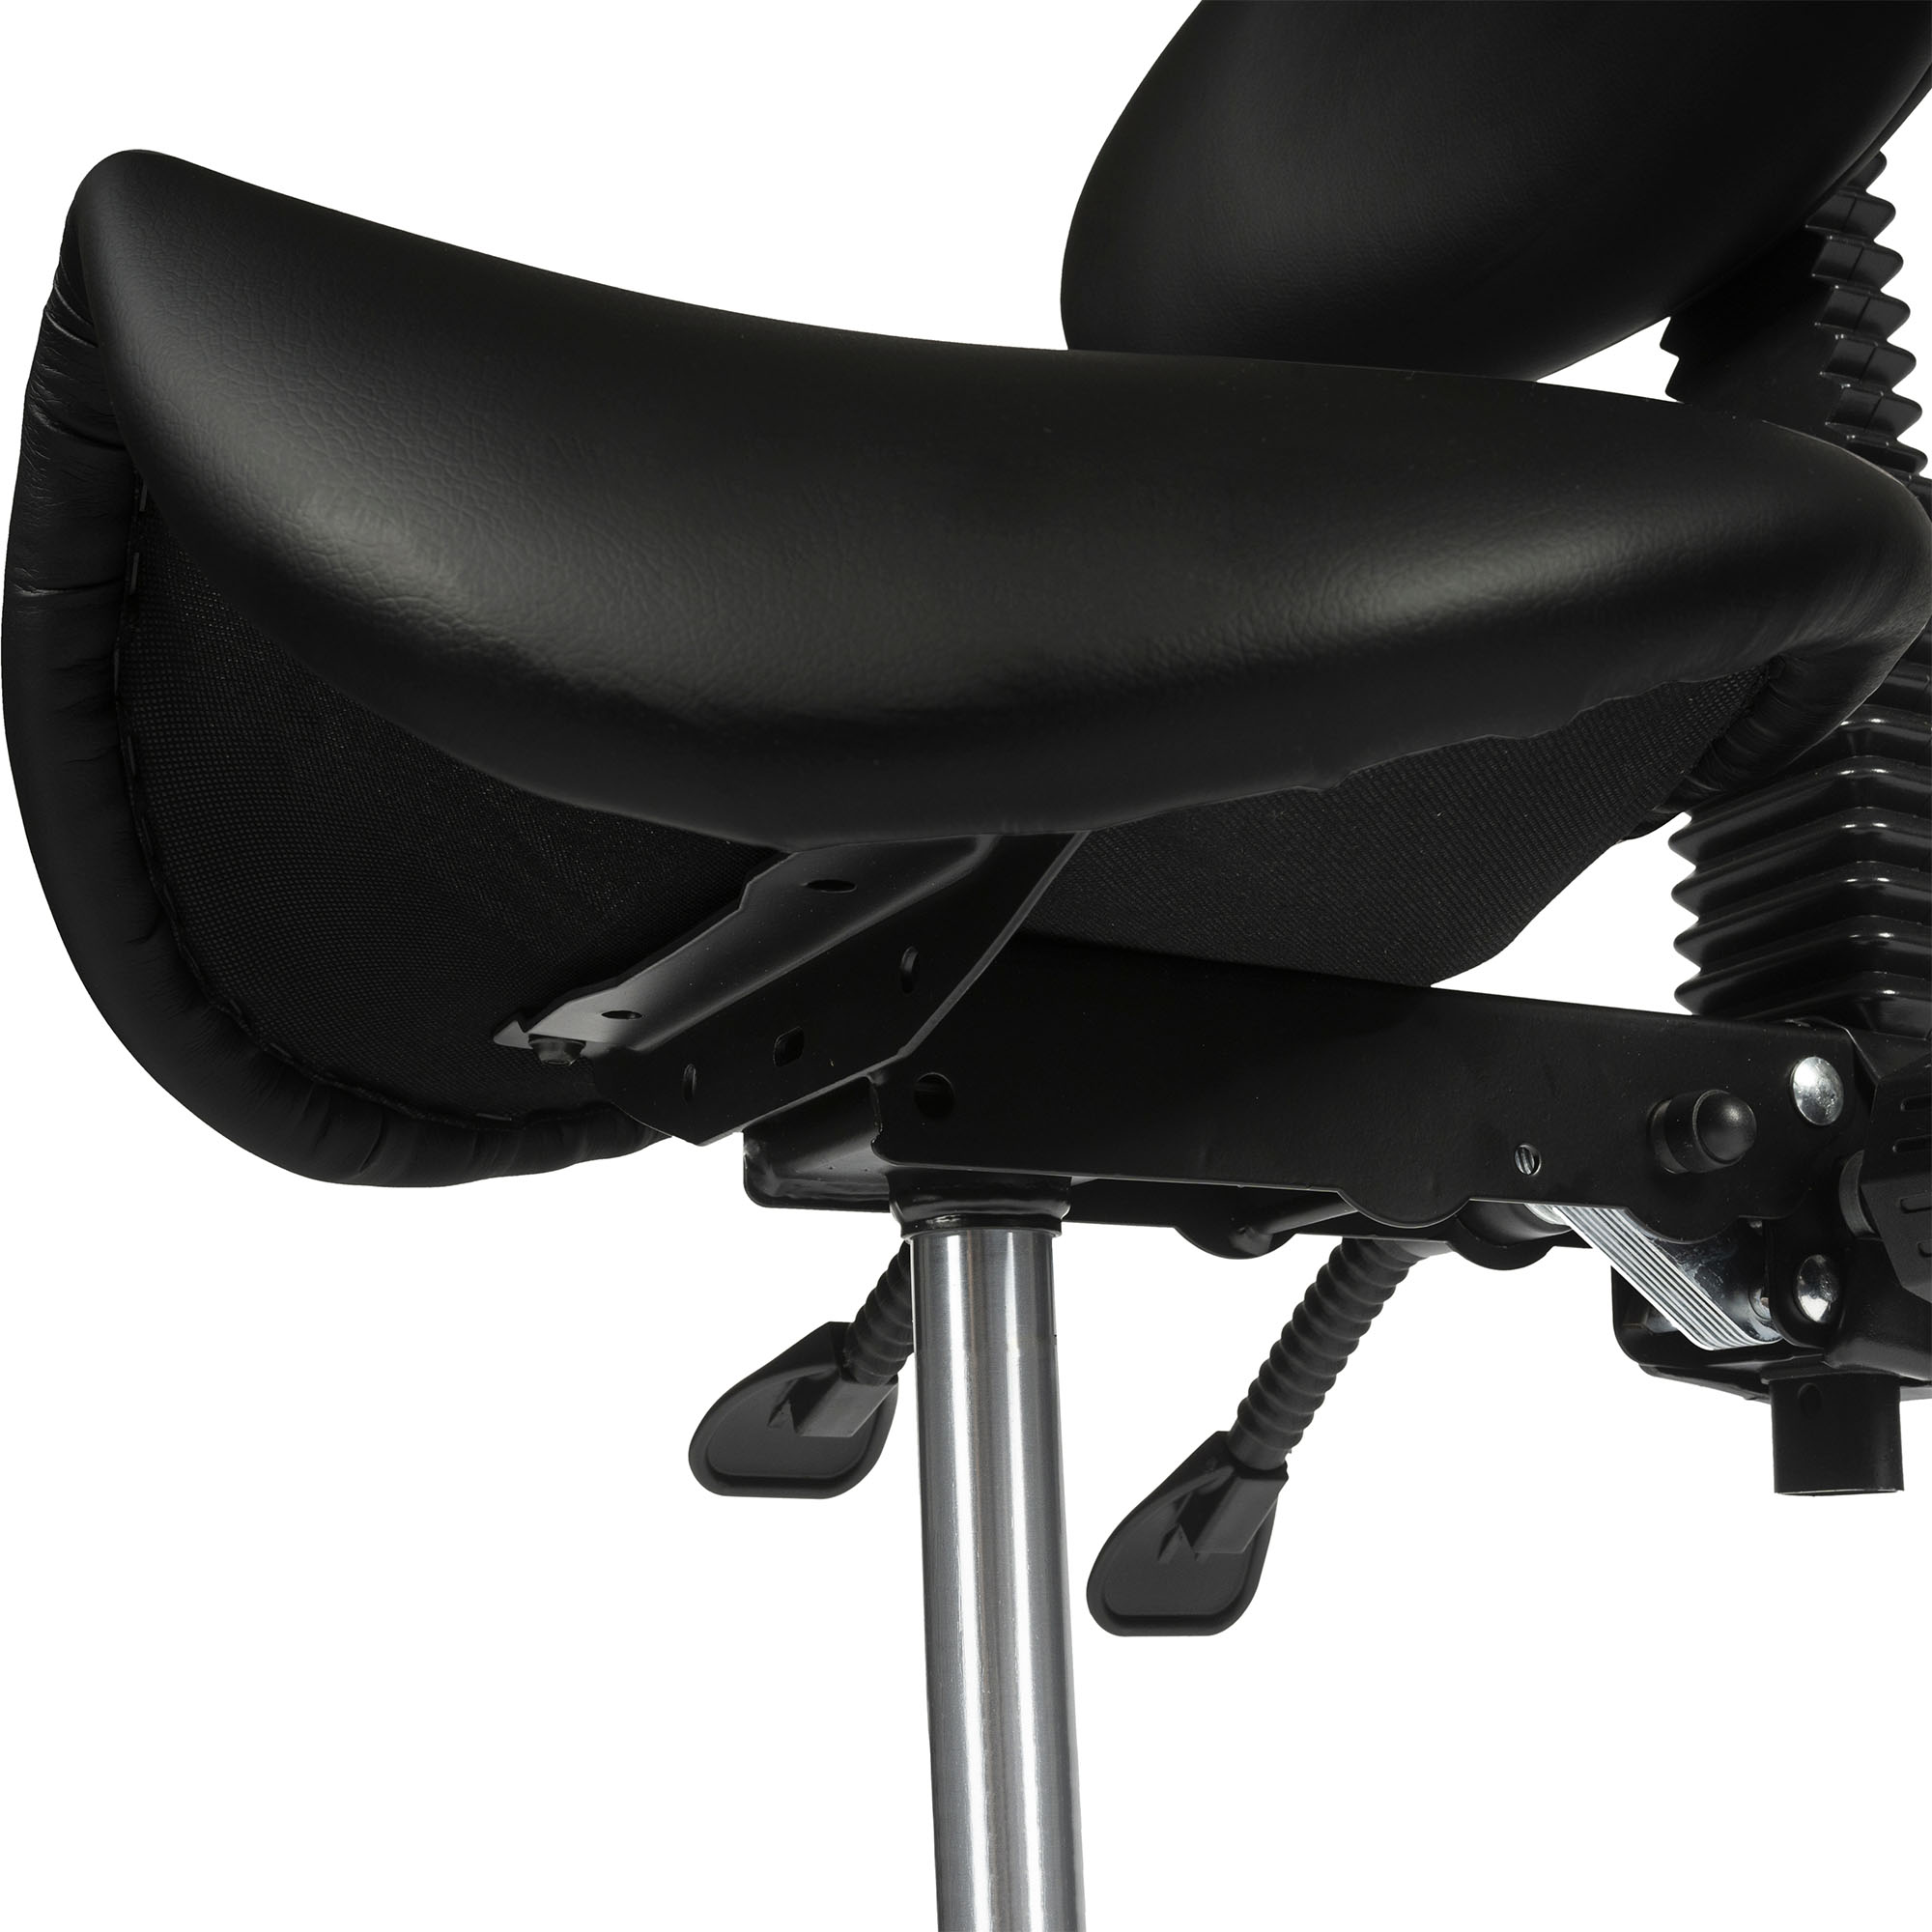 Dunimed ergonomic saddle stool with backrest black underside